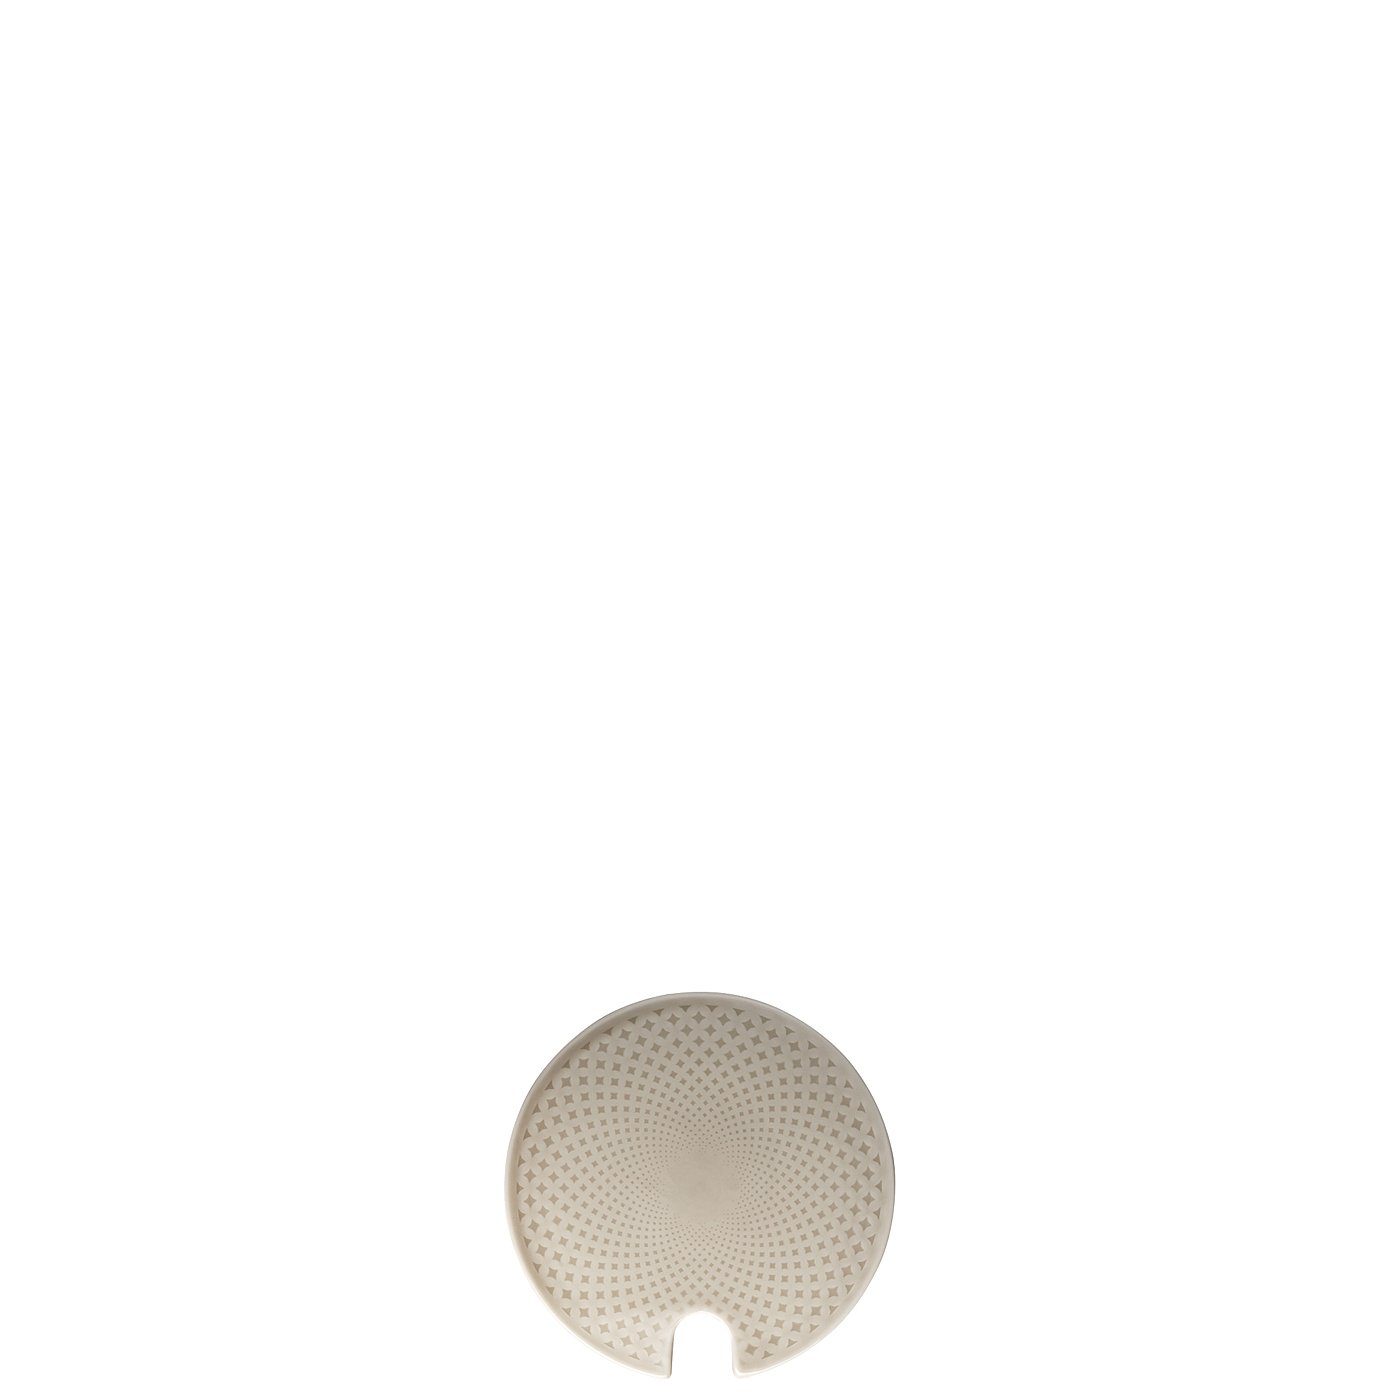 Rosenthal Zuckerdose Pearl Grey Zuckerdosen-Deckel mit Einschnitt, Junto Porzellan